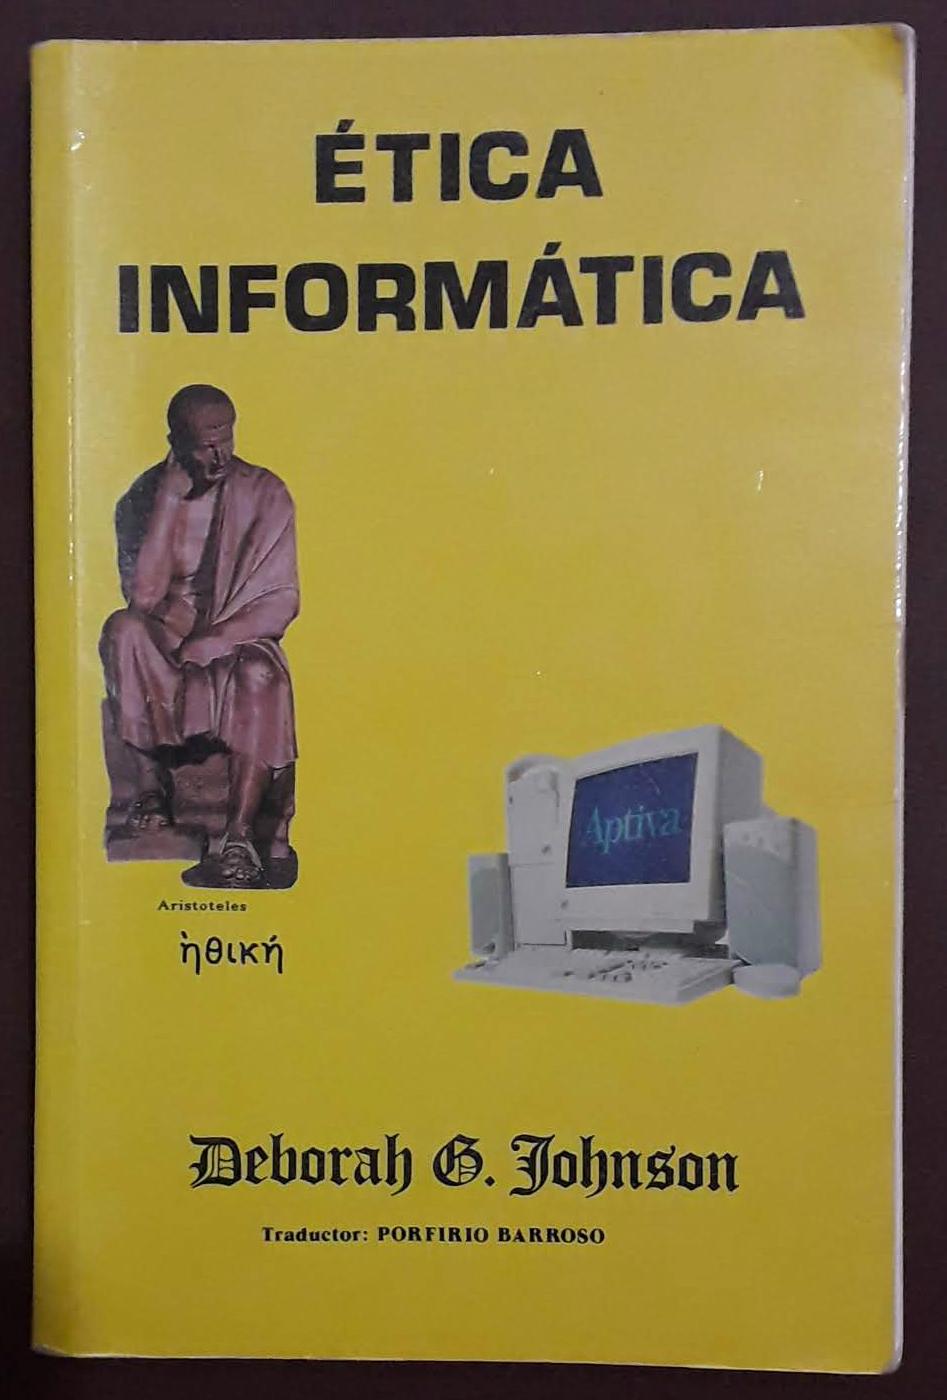 Ética informática - Deborah G. Johnson